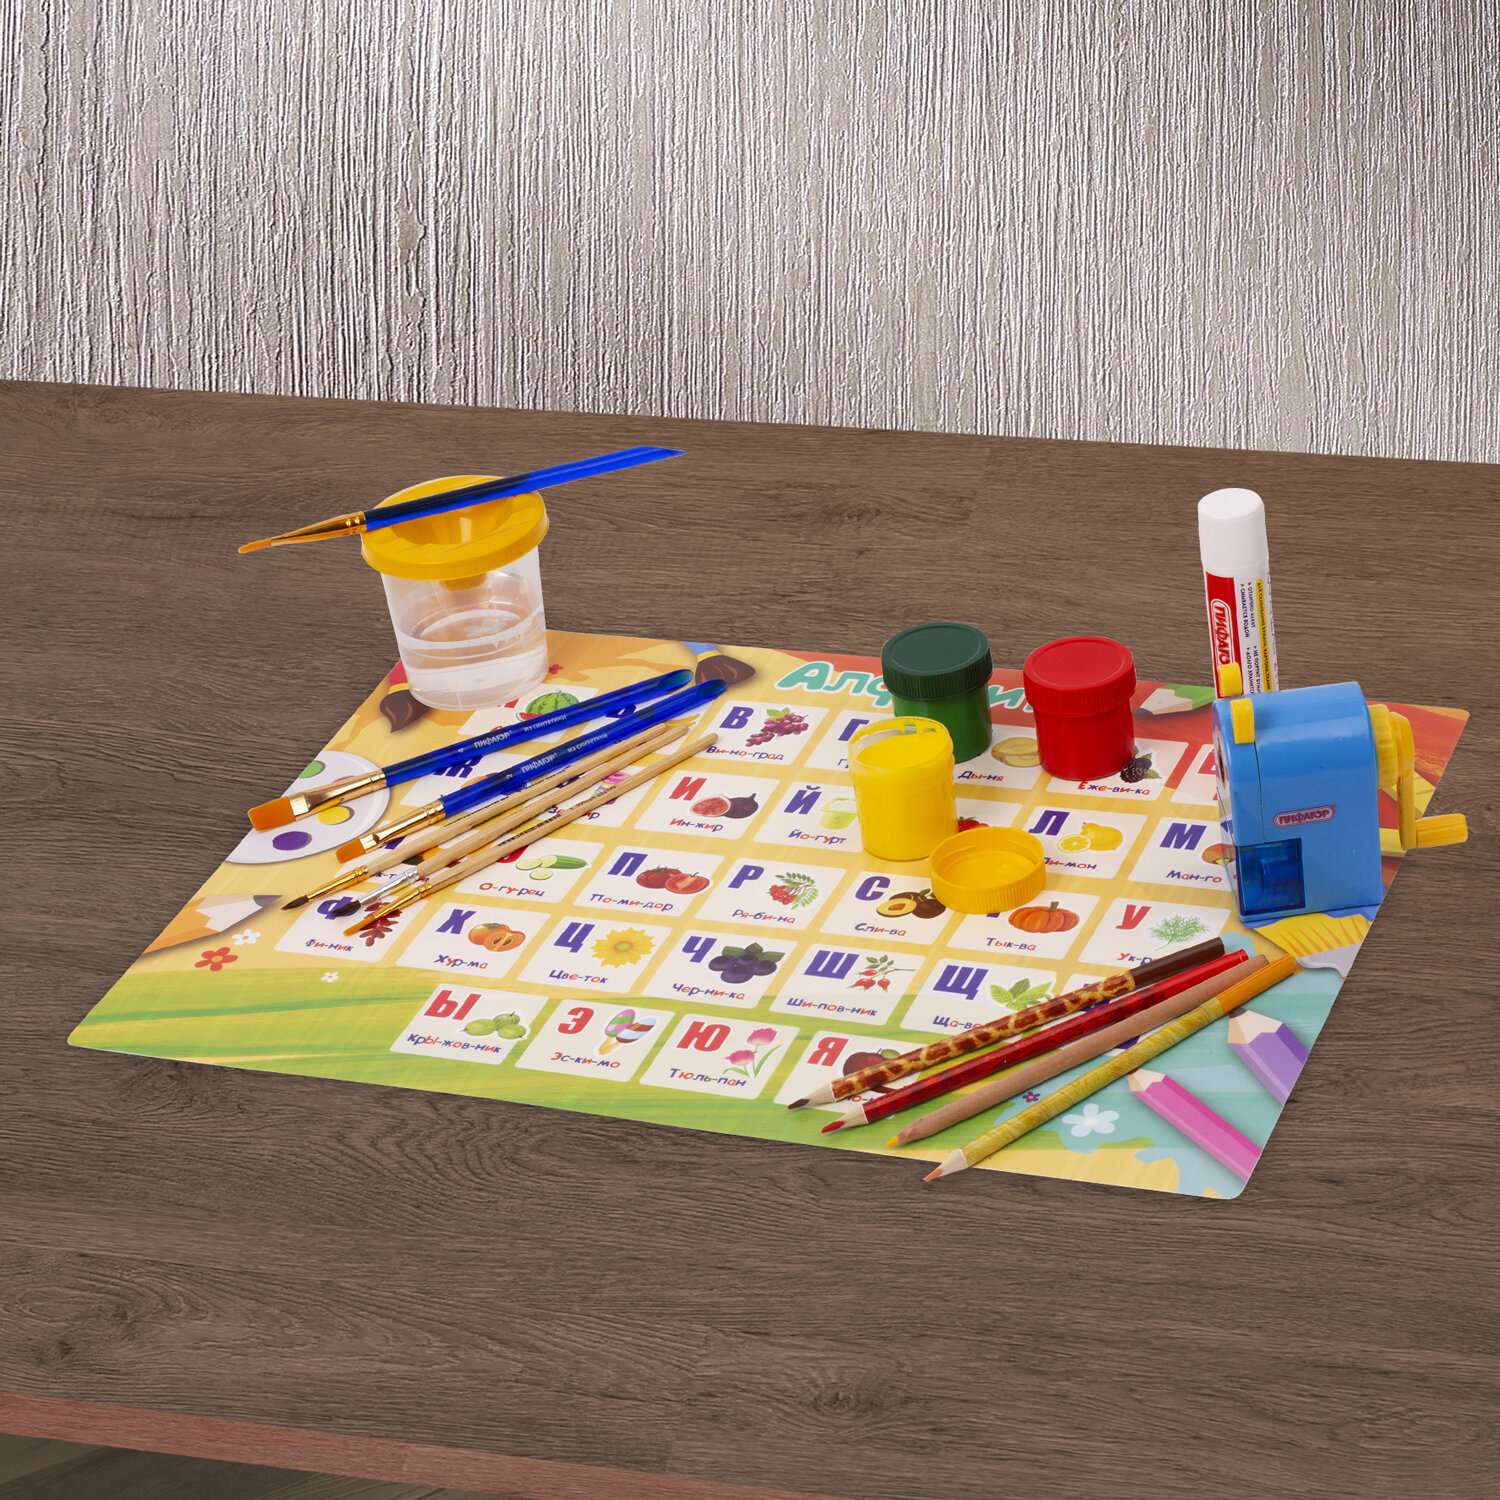 Клеенка настольная Brauberg подложка на стол детская для труда и рисования А3+ 46x33 см - фото 9